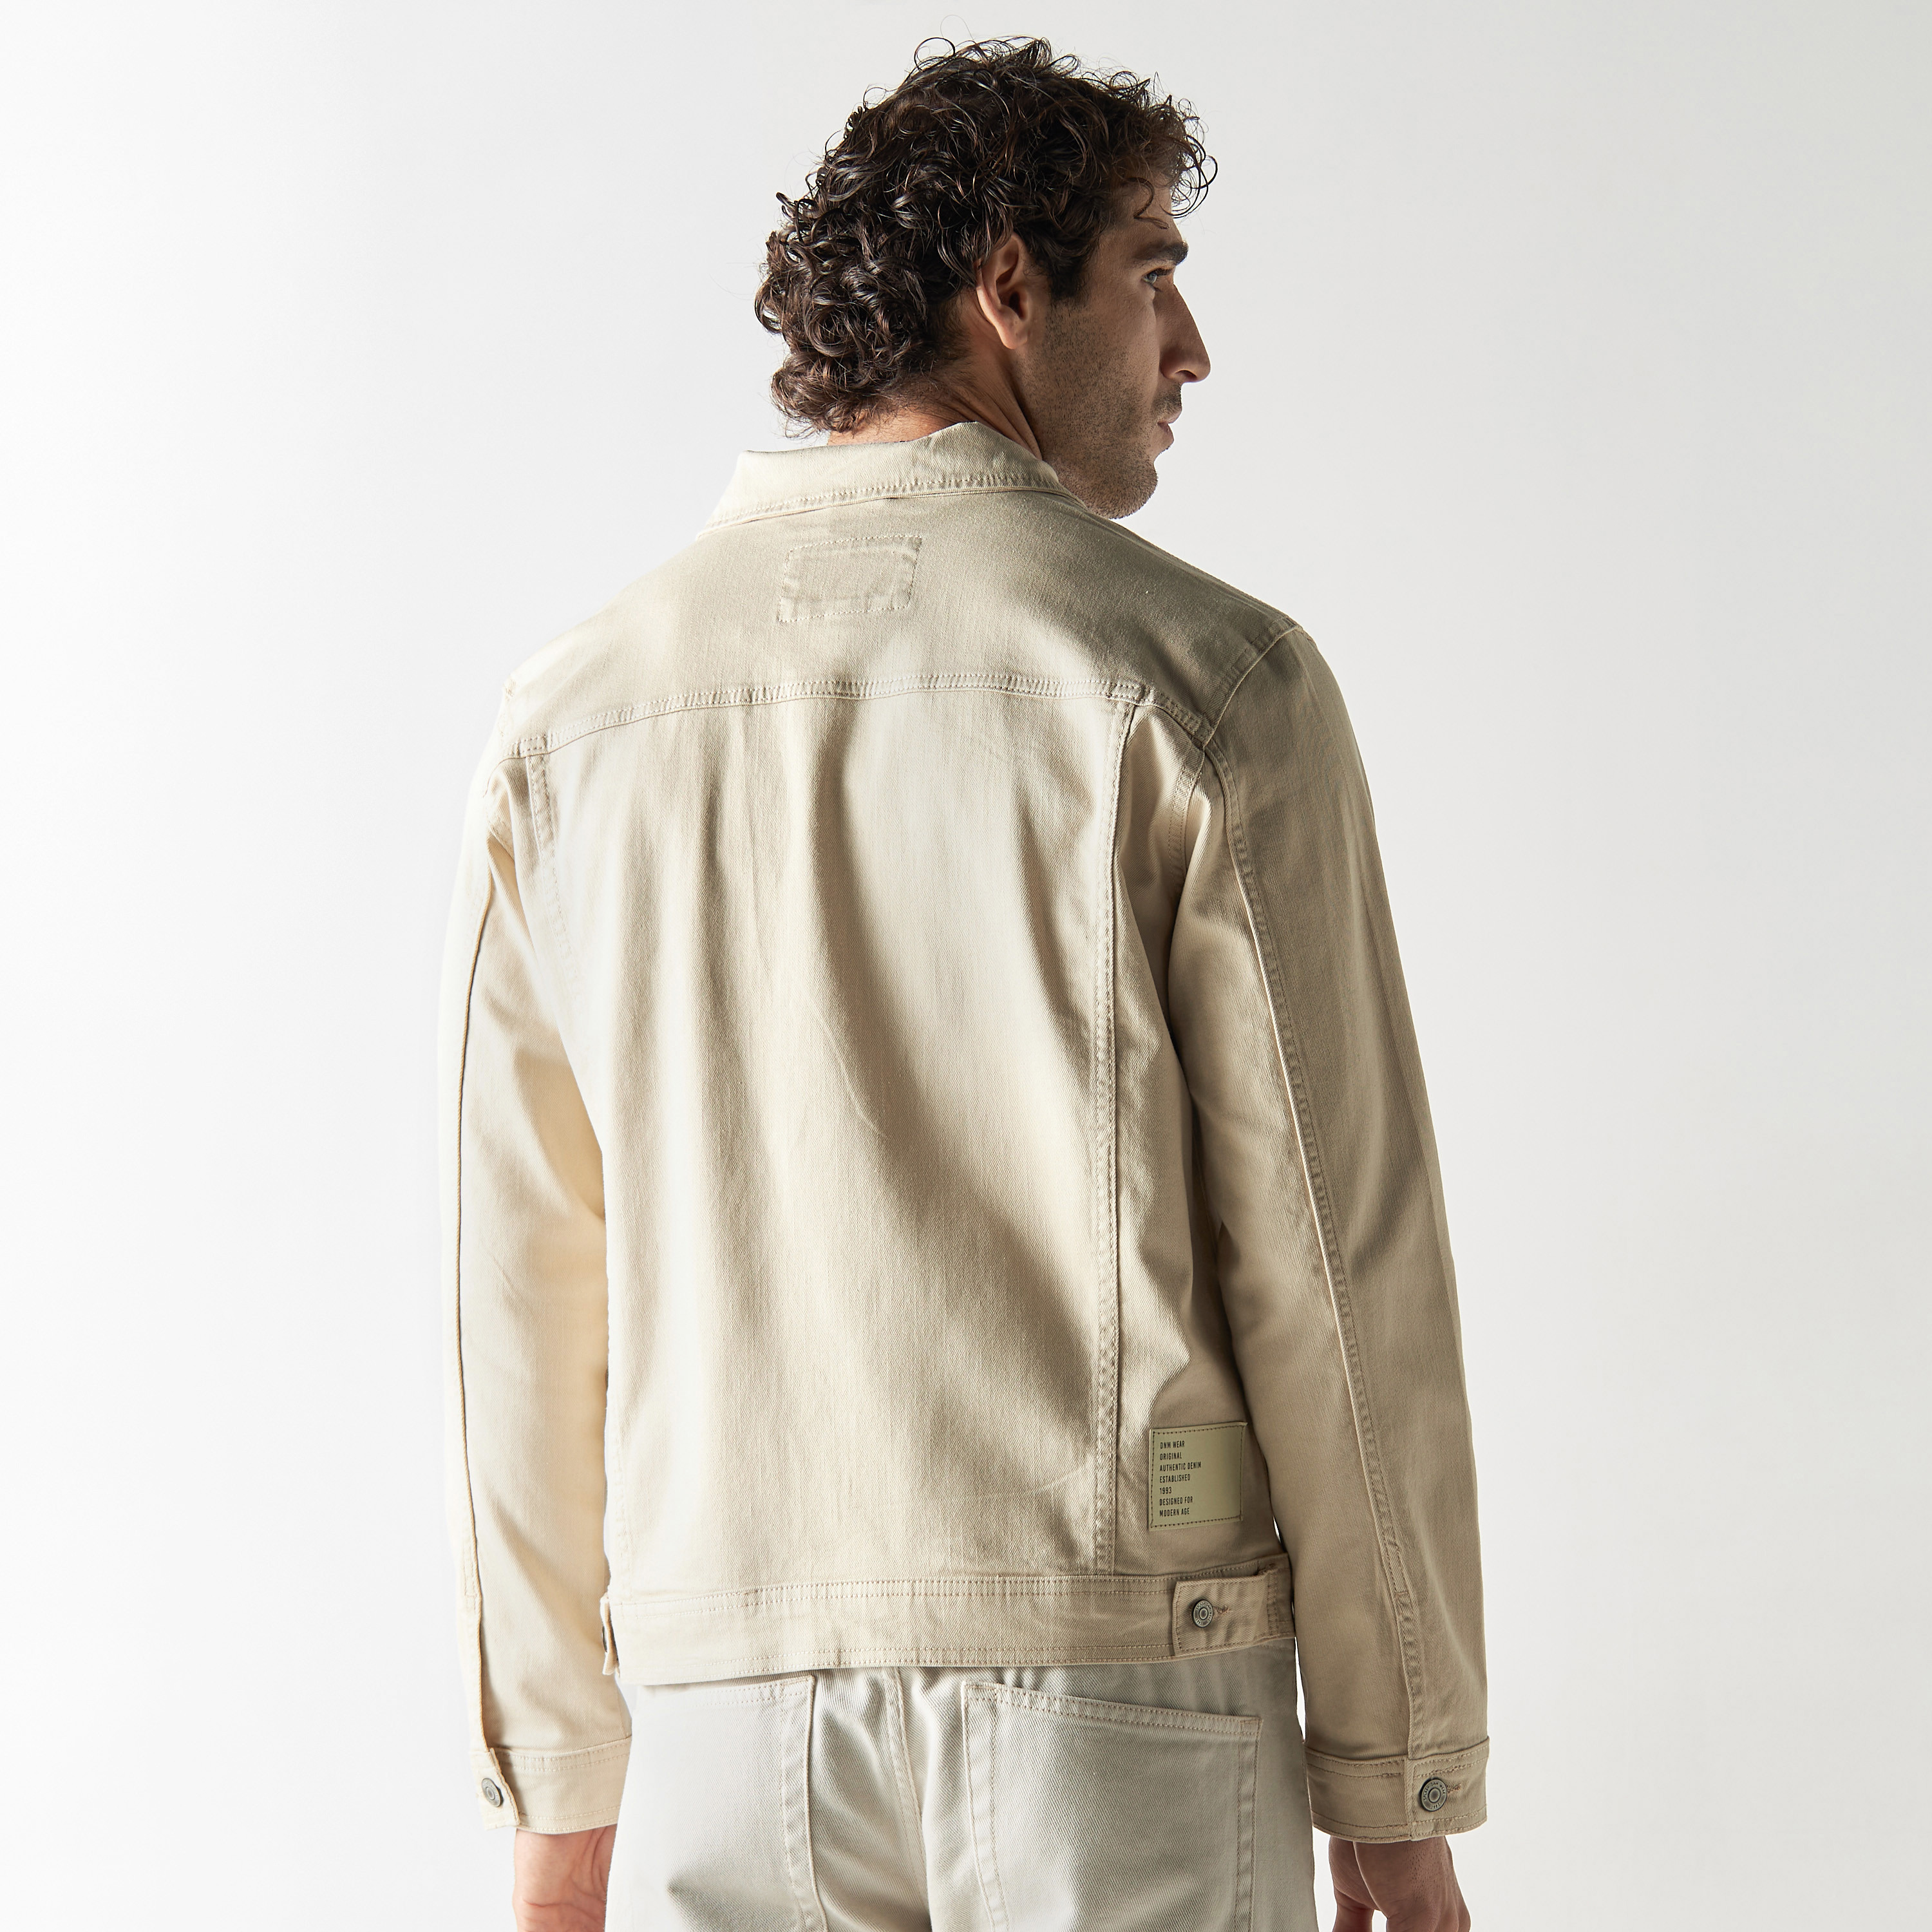 Buy CELIO Solid Beige Long Sleeves Denim Jacket Online